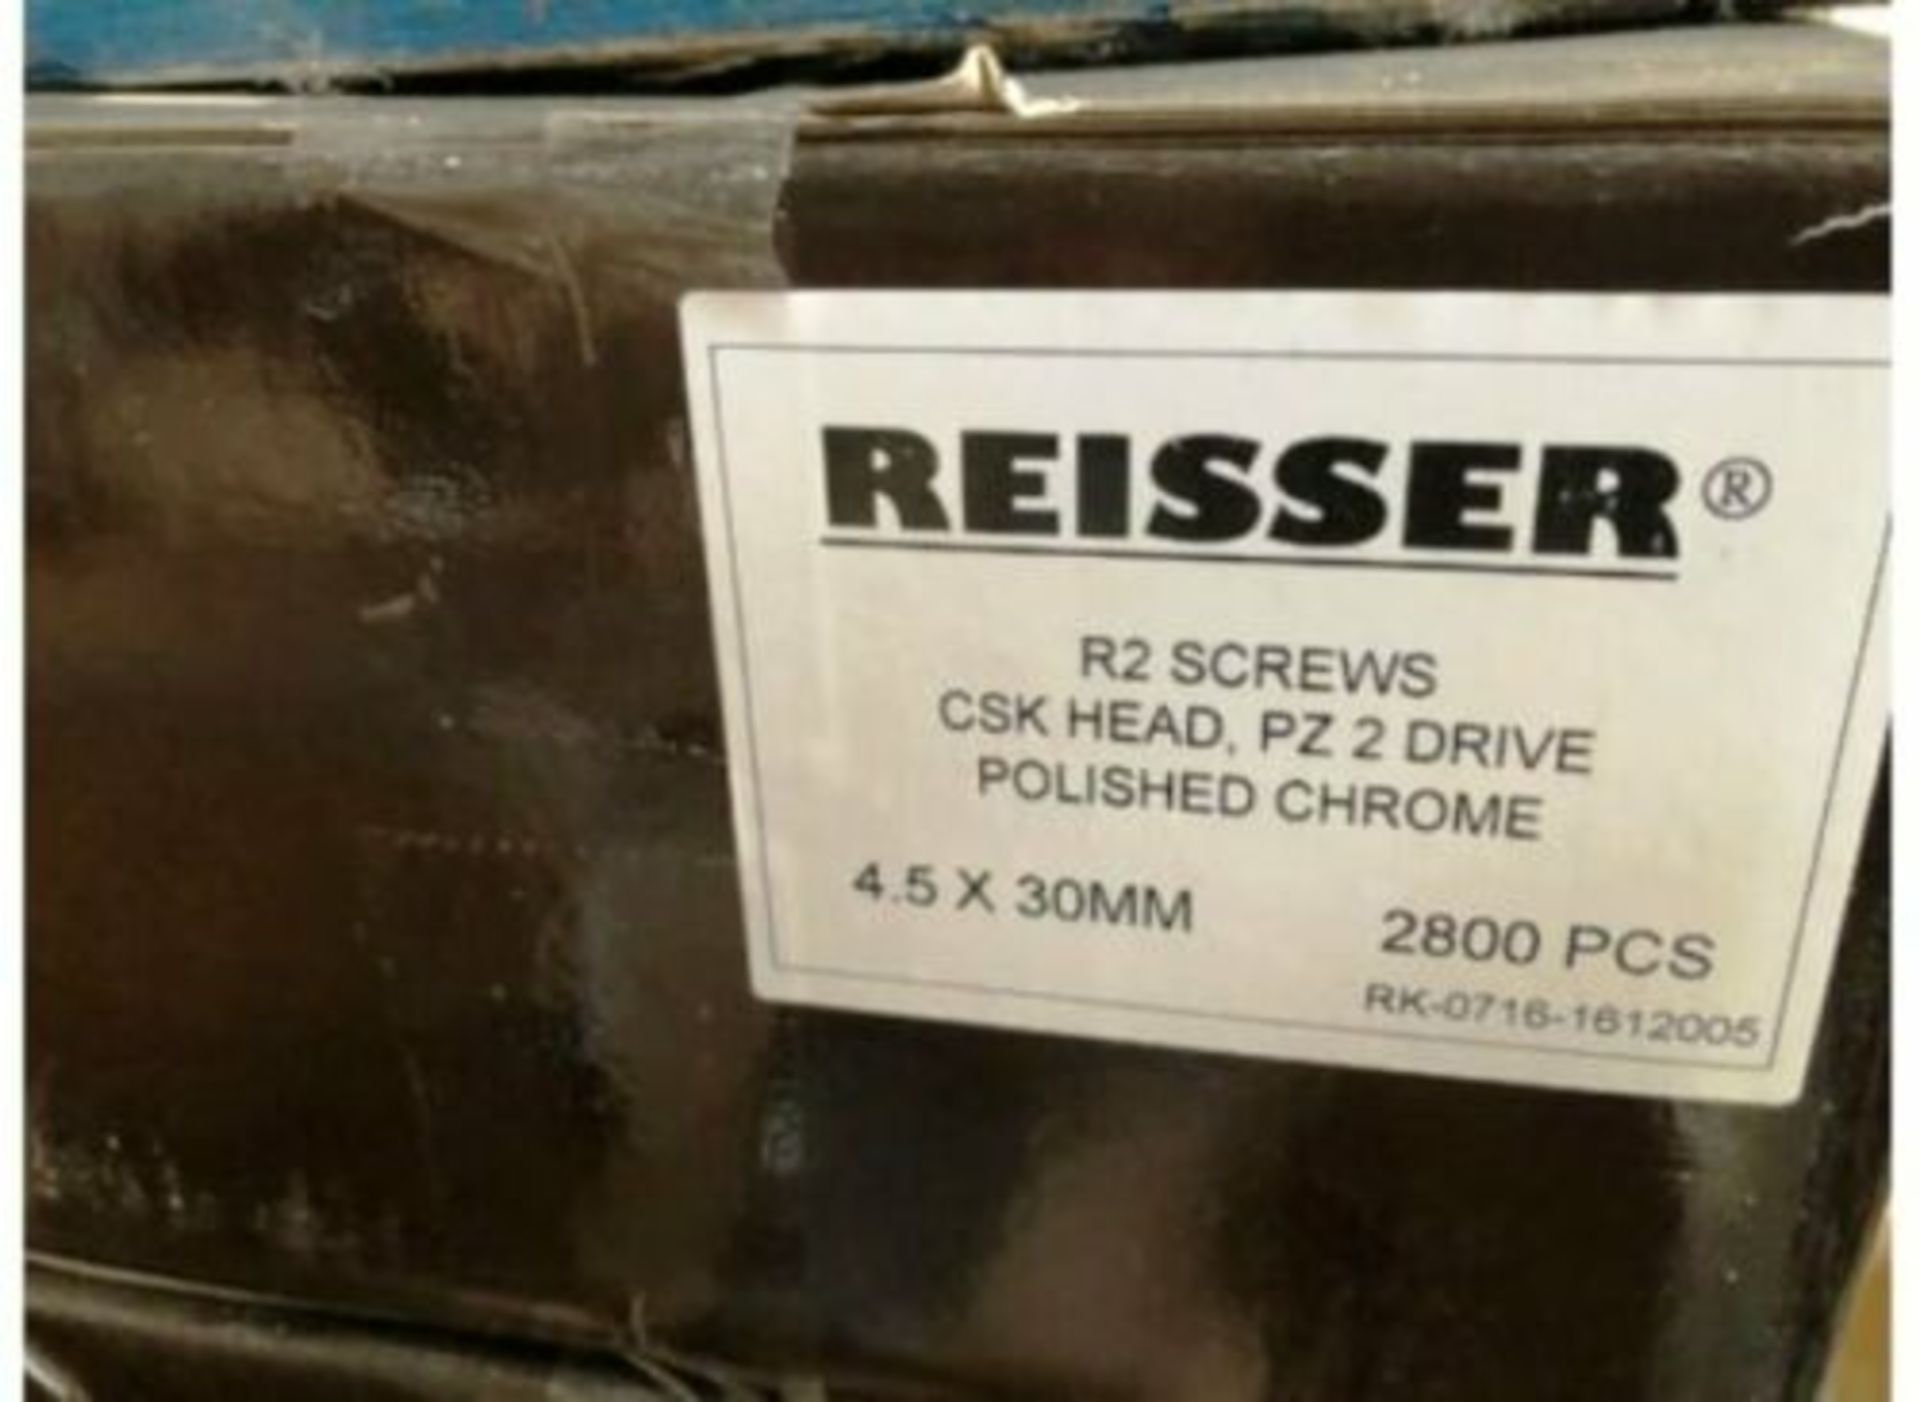 2800 x 4.5 x 30mm Reisser Screws Polished Chrome